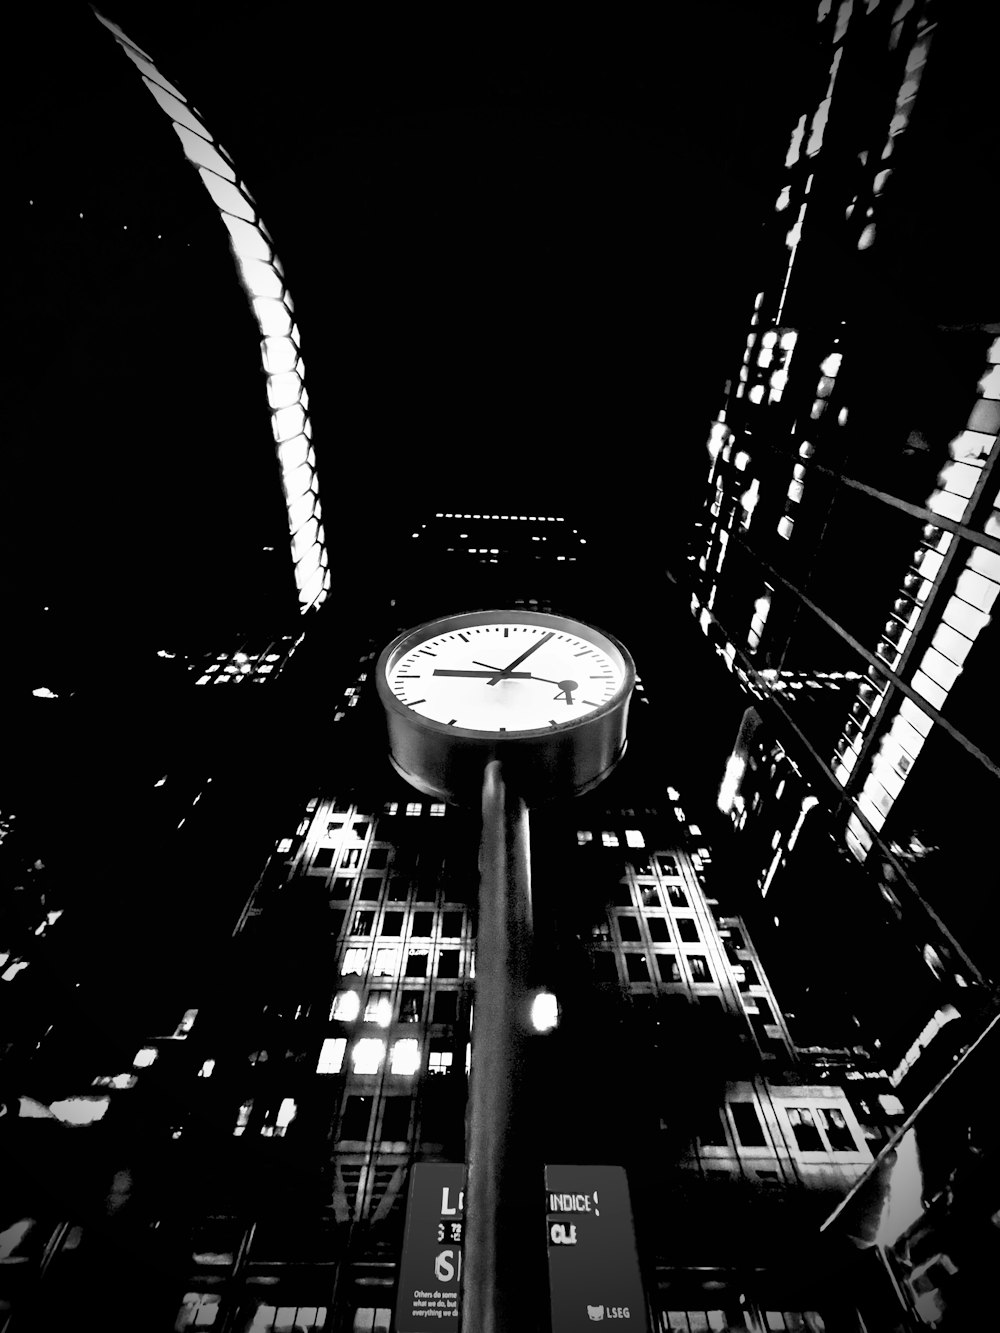 Une photo en noir et blanc d’une horloge au milieu d’une ville